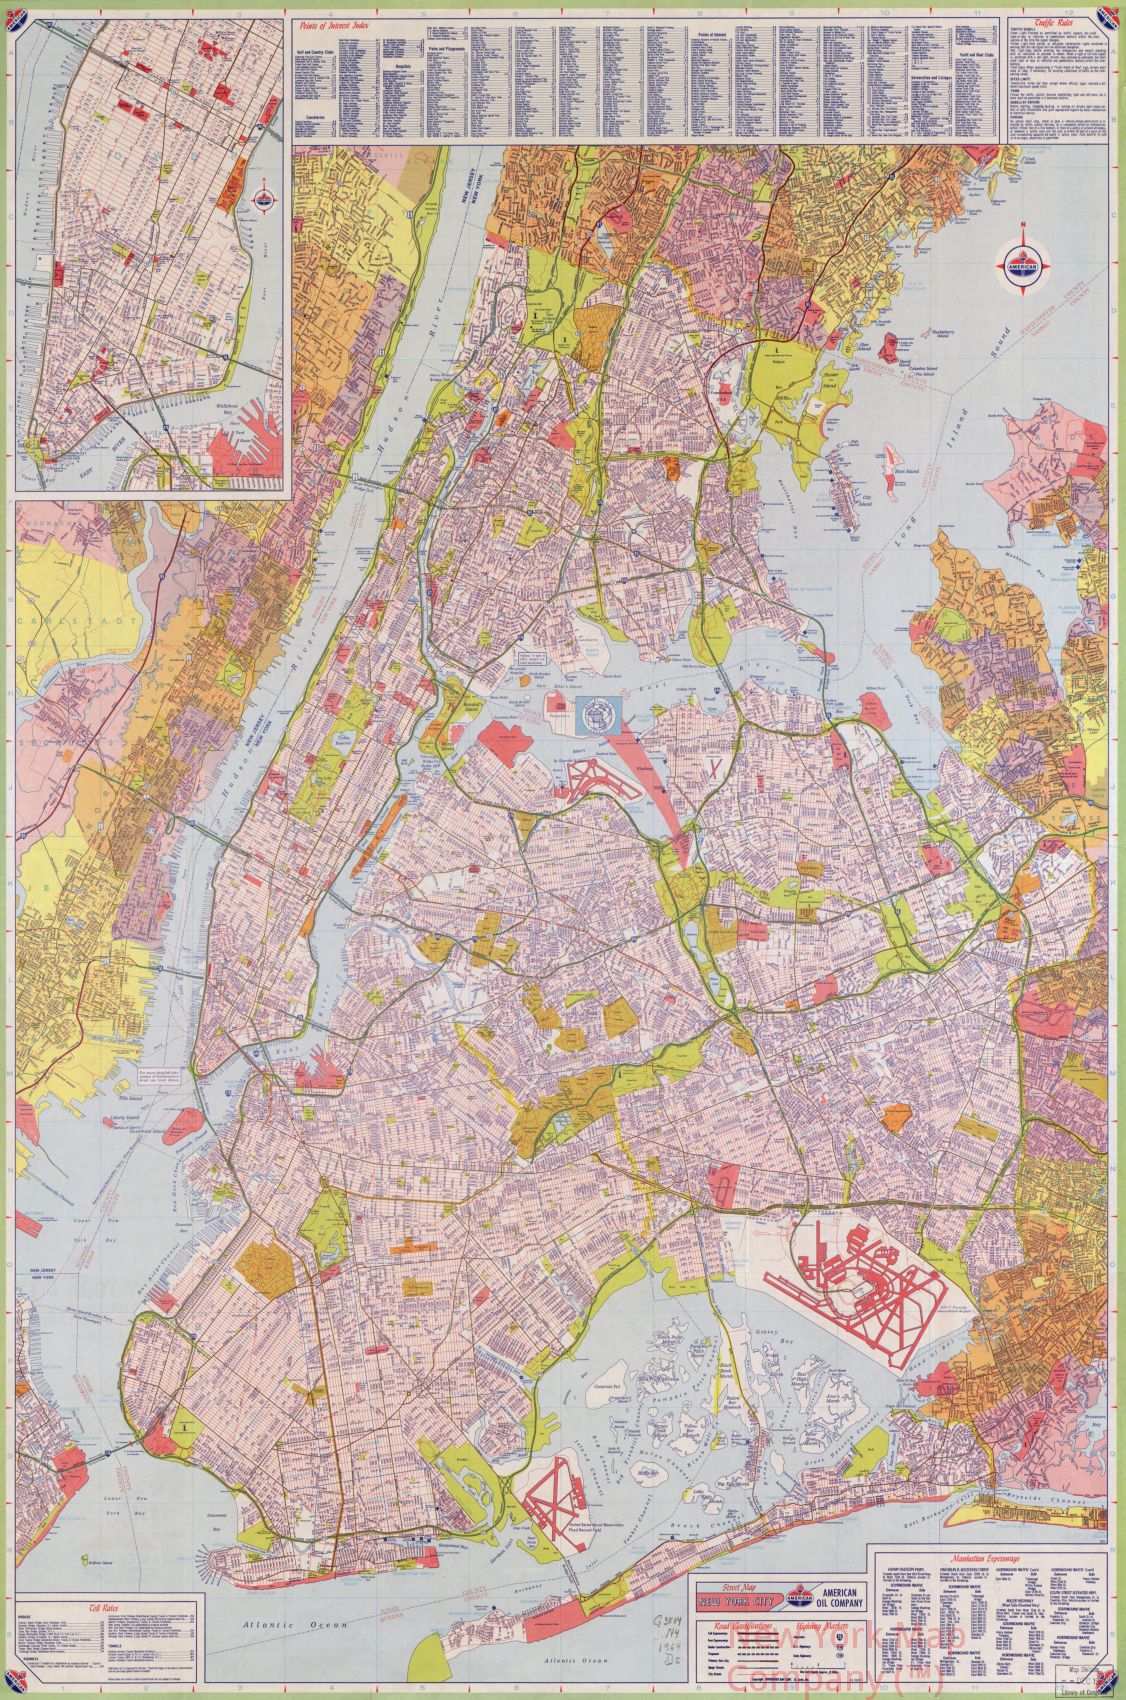 1964 map Street map, New York City. Map Subjects: Long Island | Long Island NY | New York New York Region | New York Region NY |